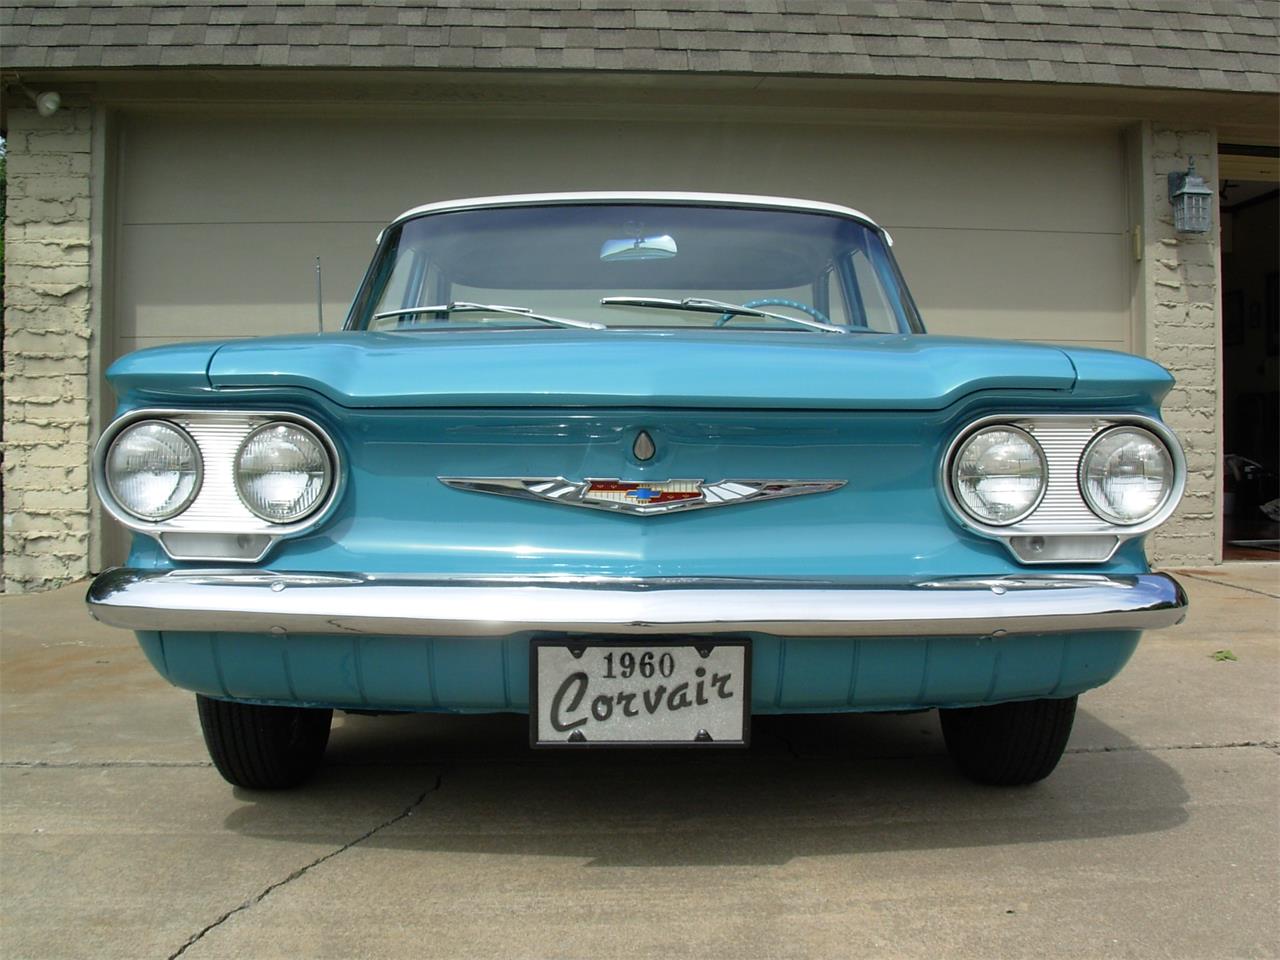 For Sale: 1960 Chevrolet Corvair in Broken Arrow, Oklahoma.